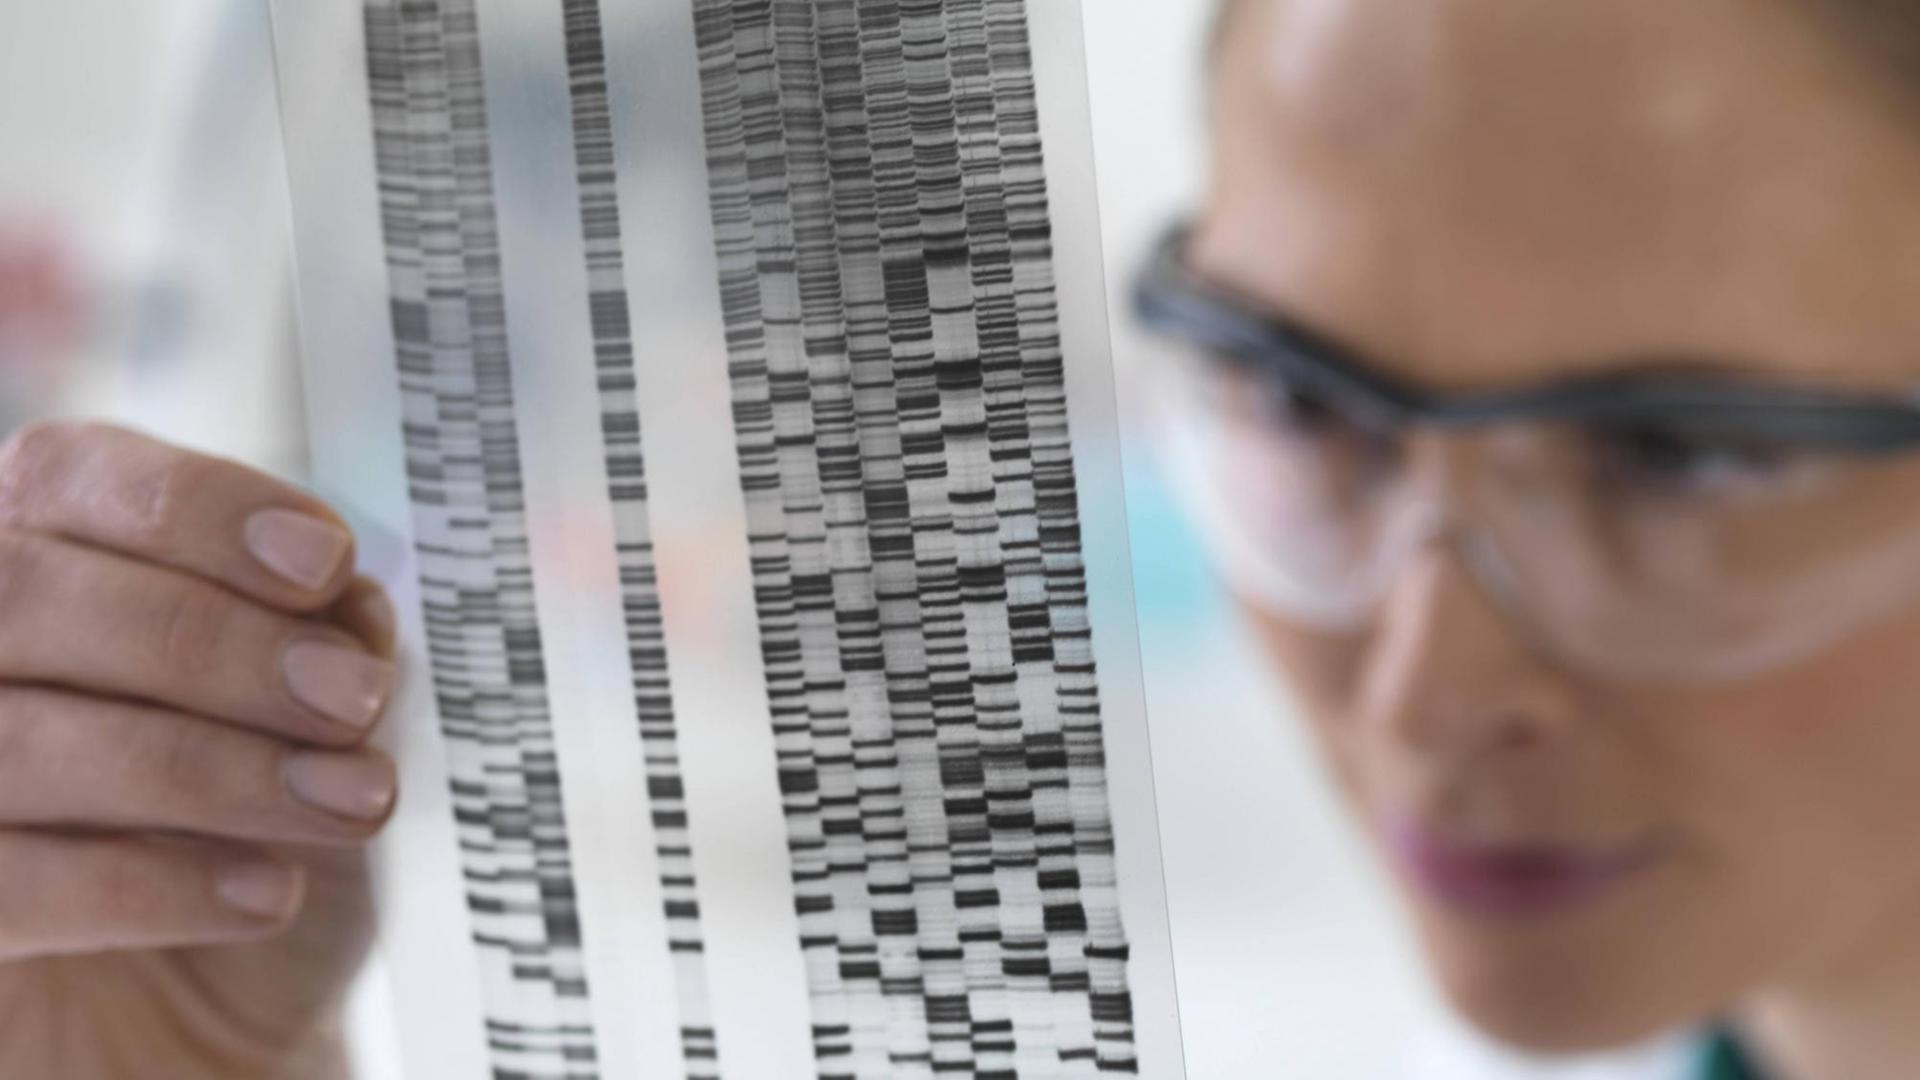 Wissenschaftlerin schaut sich DNA-Ergebnisse auf einem Streifen an (Symbolbild)